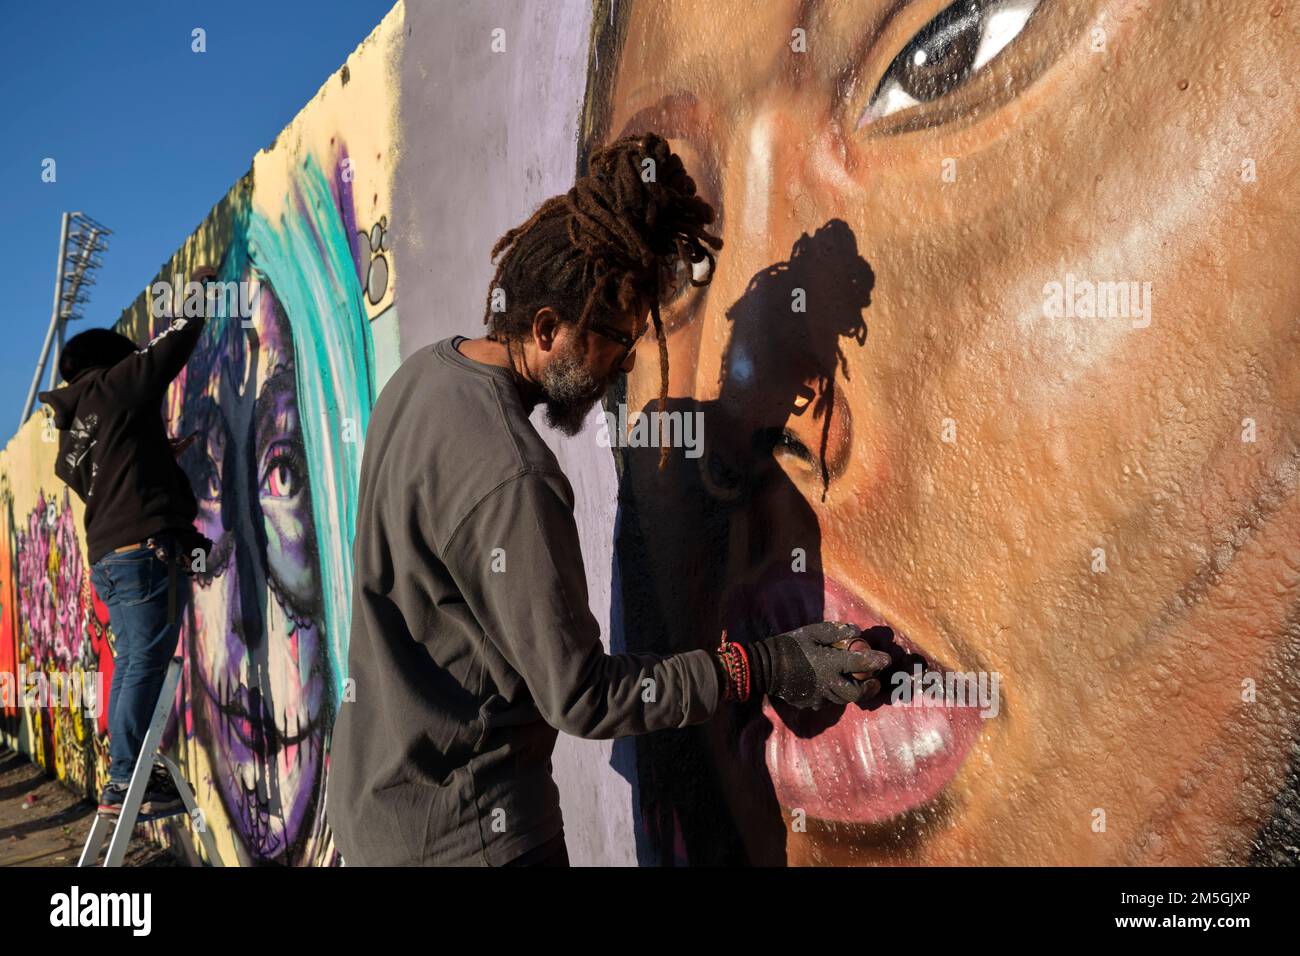 Allemagne, Berlin, 13. 03. 2022, Mauerpark, mur de graffiti, artiste de graffiti Eme Freethinker au travail Banque D'Images